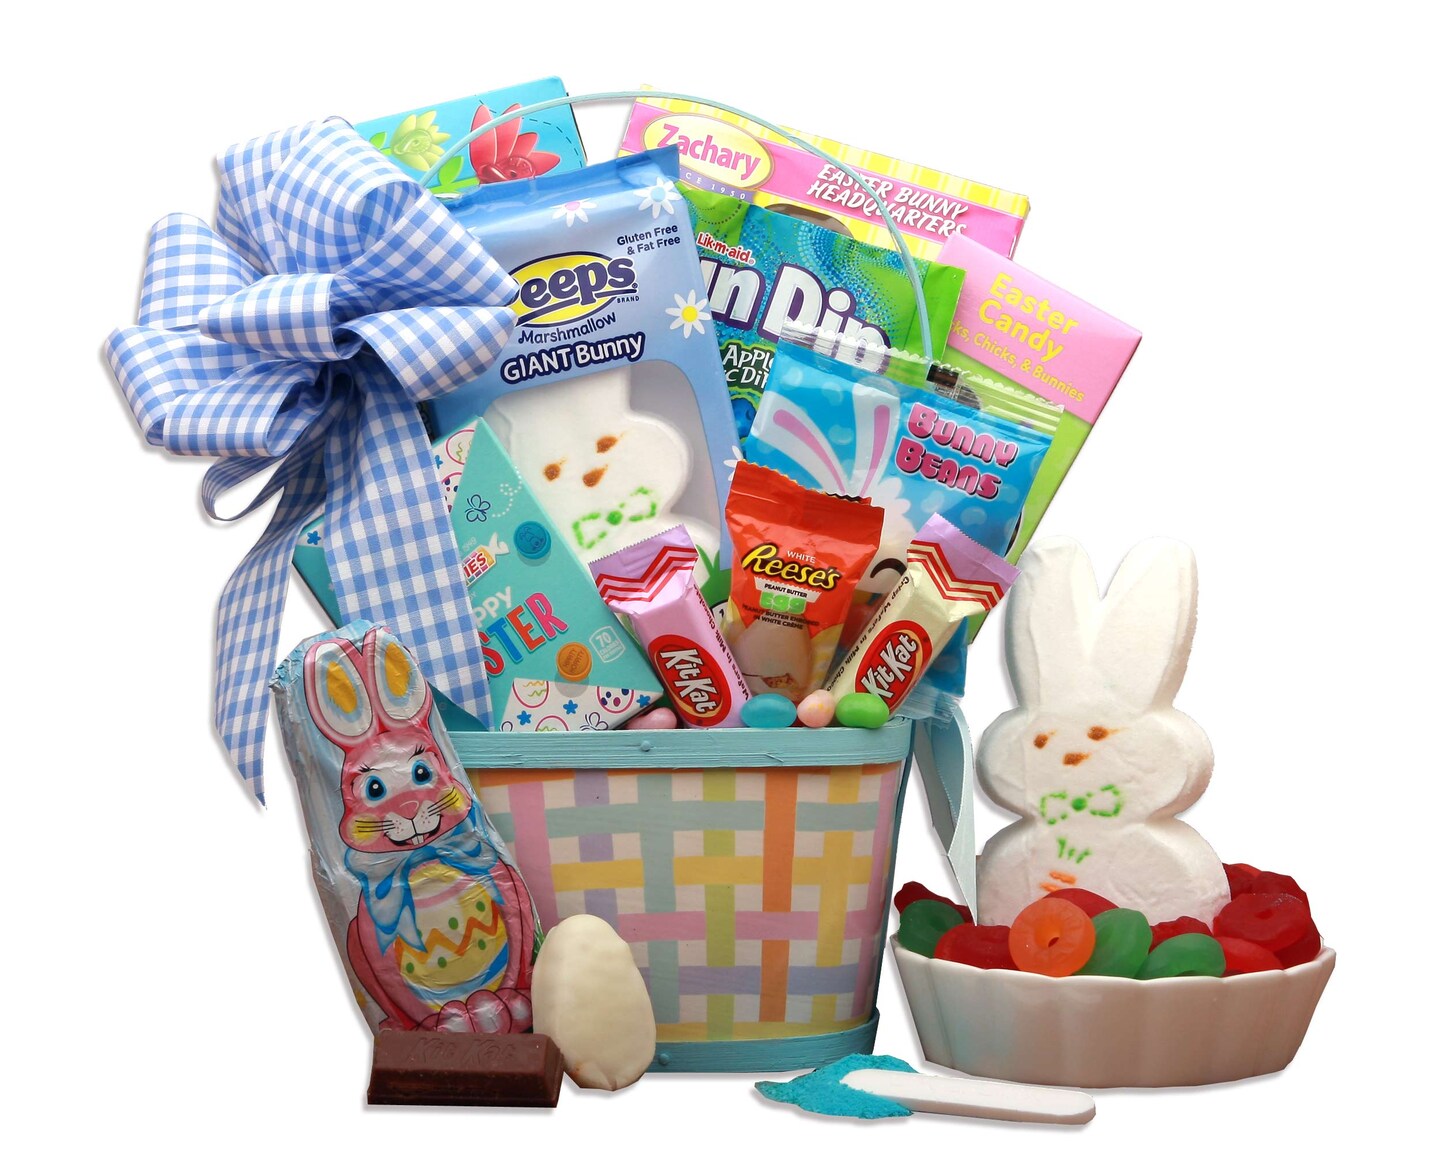 GBDS Easter Gift Basket - Easter Delights Easter Gift Basket